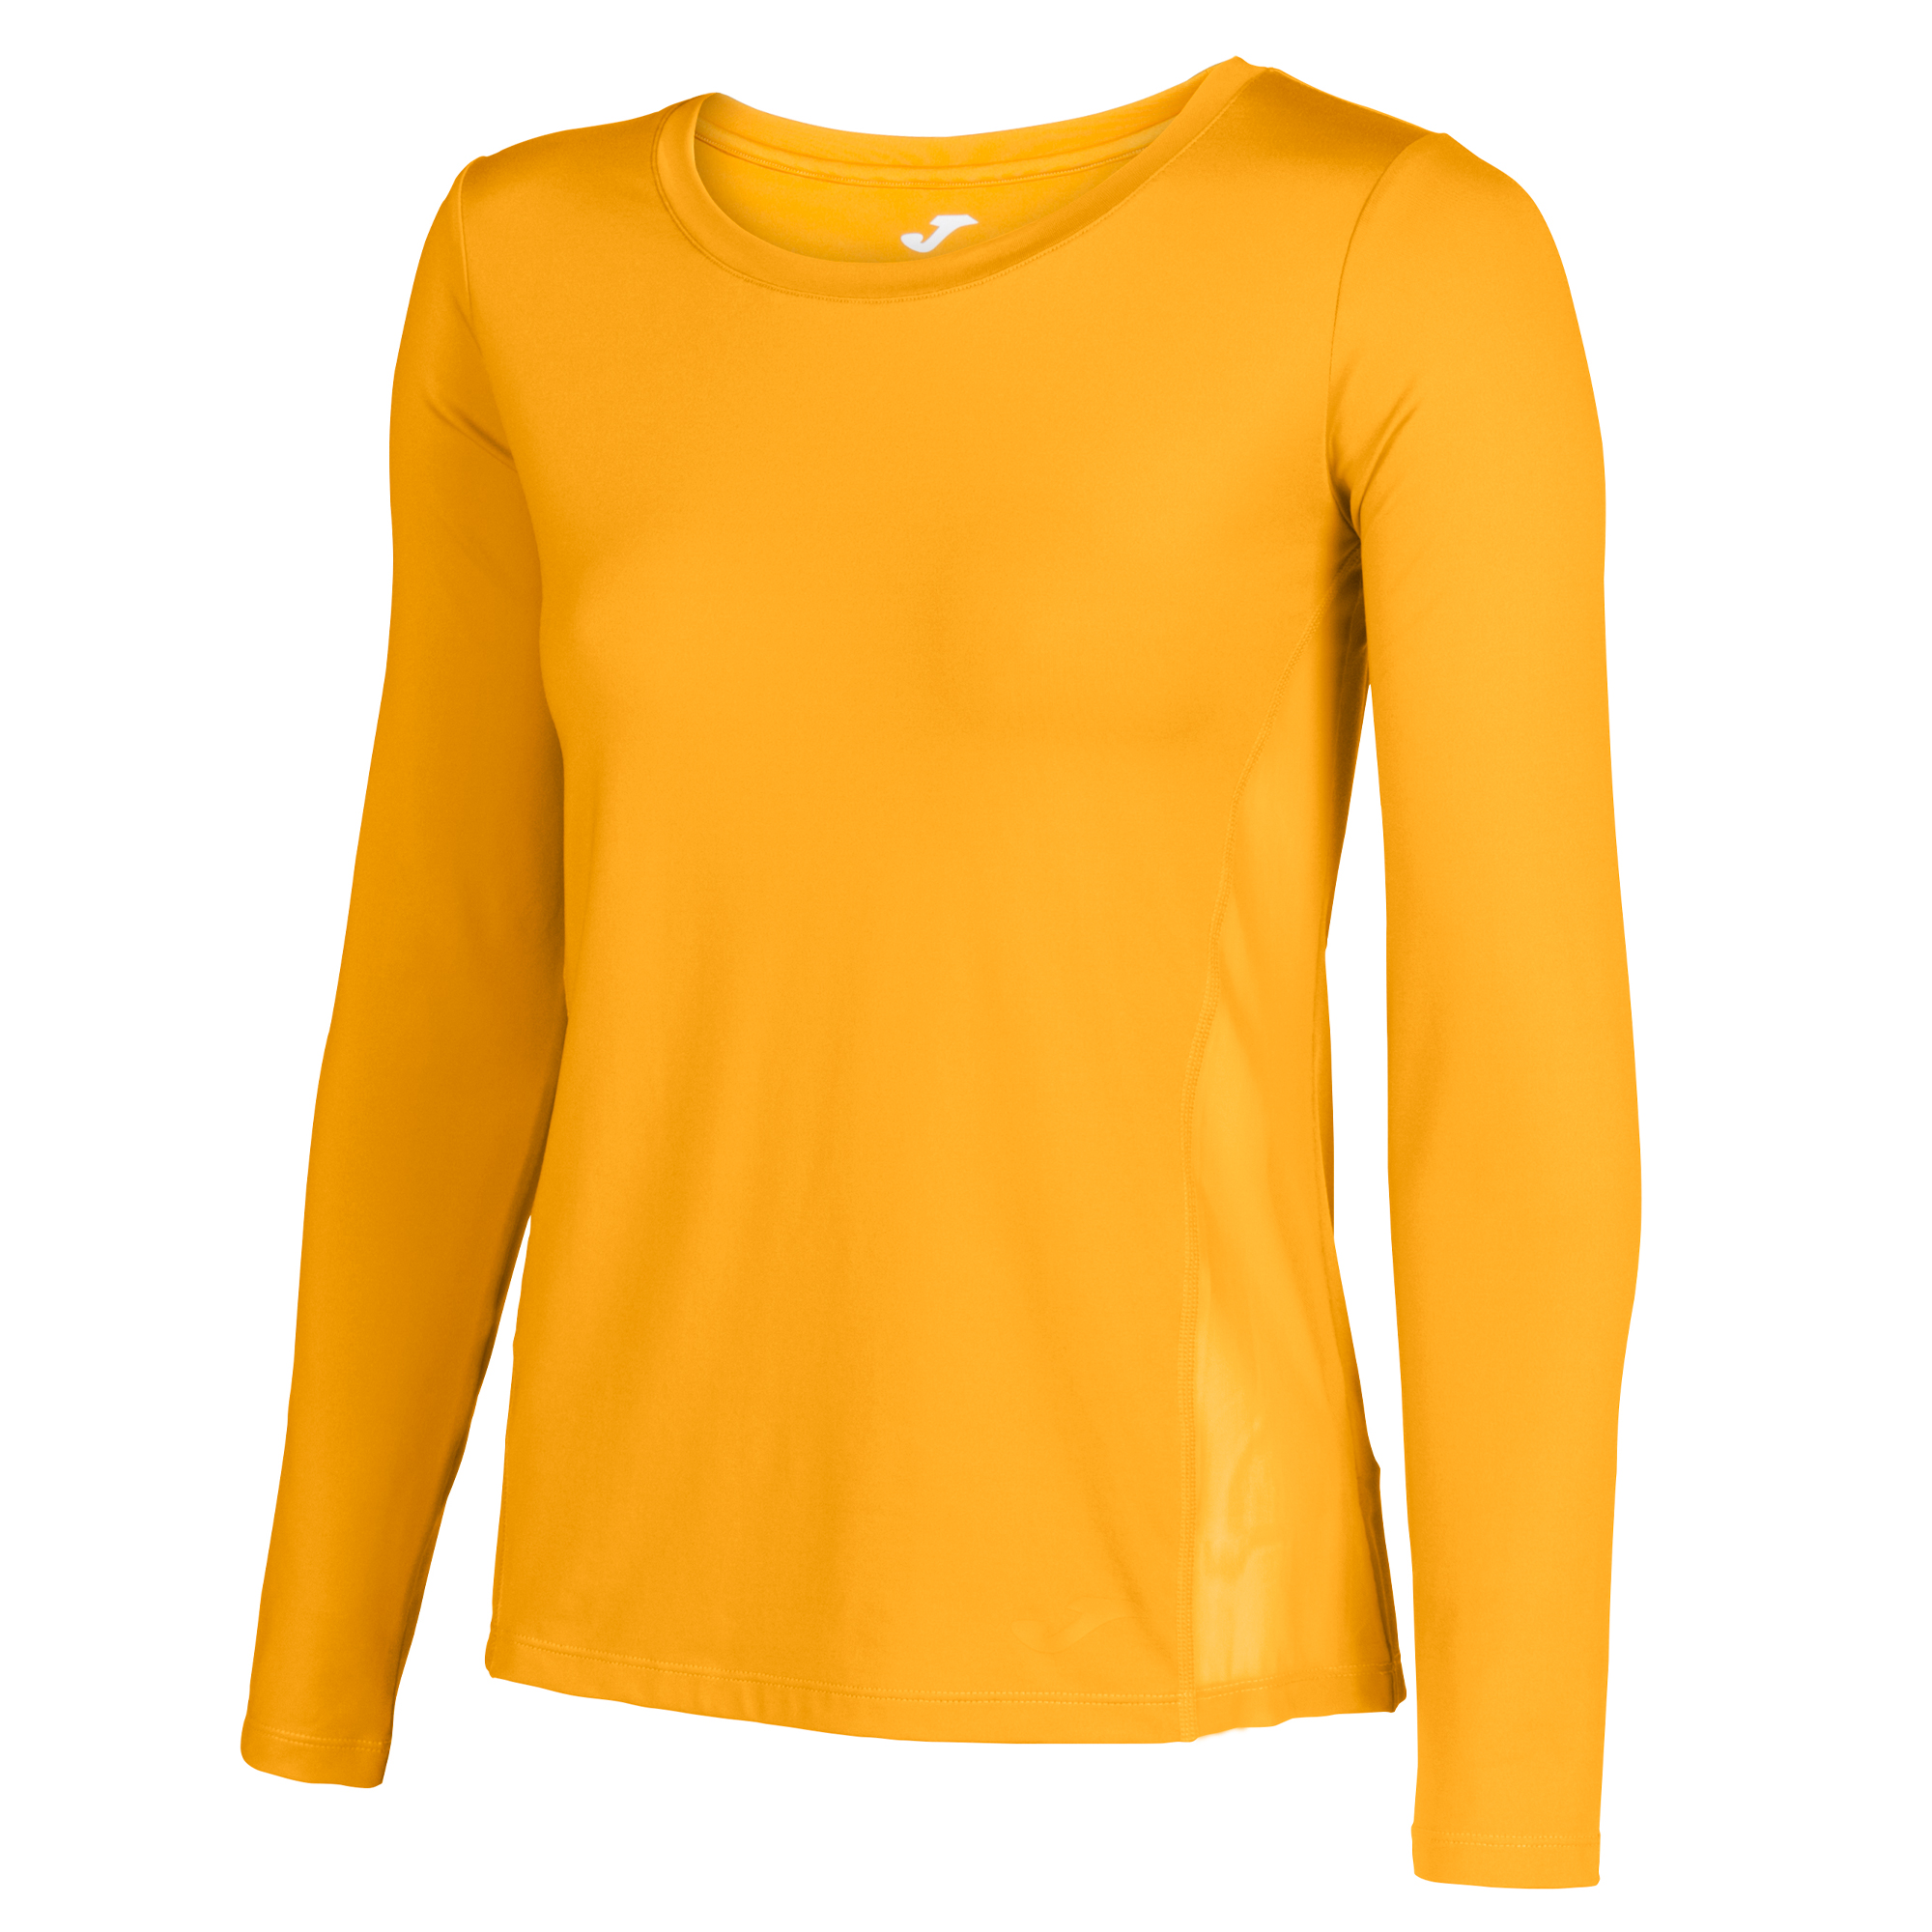 mustard yellow t shirt women's